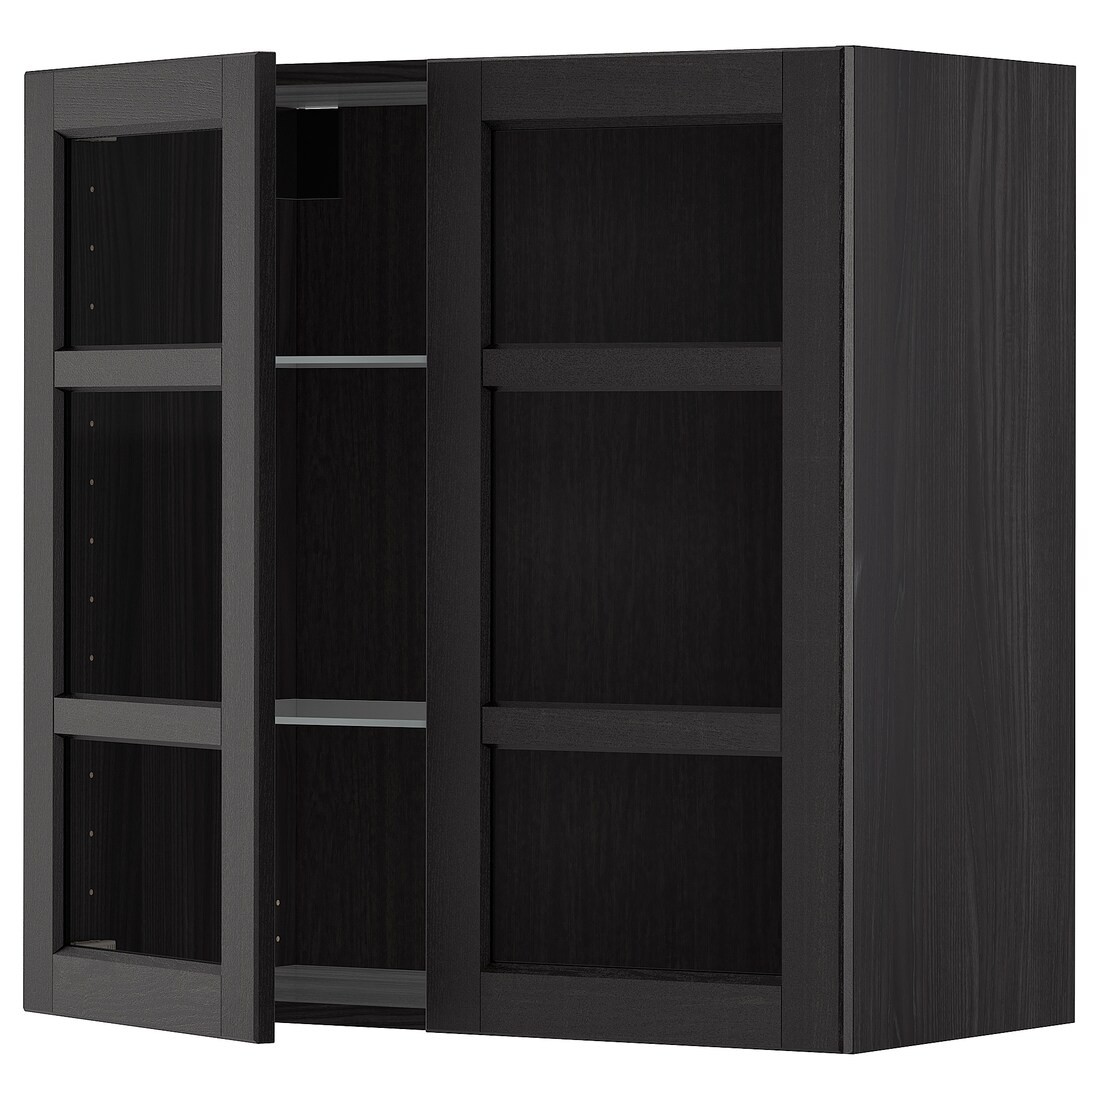 METOD МЕТОД Навесной шкаф, черный / Lerhyttan черная морилка, 80x80 см